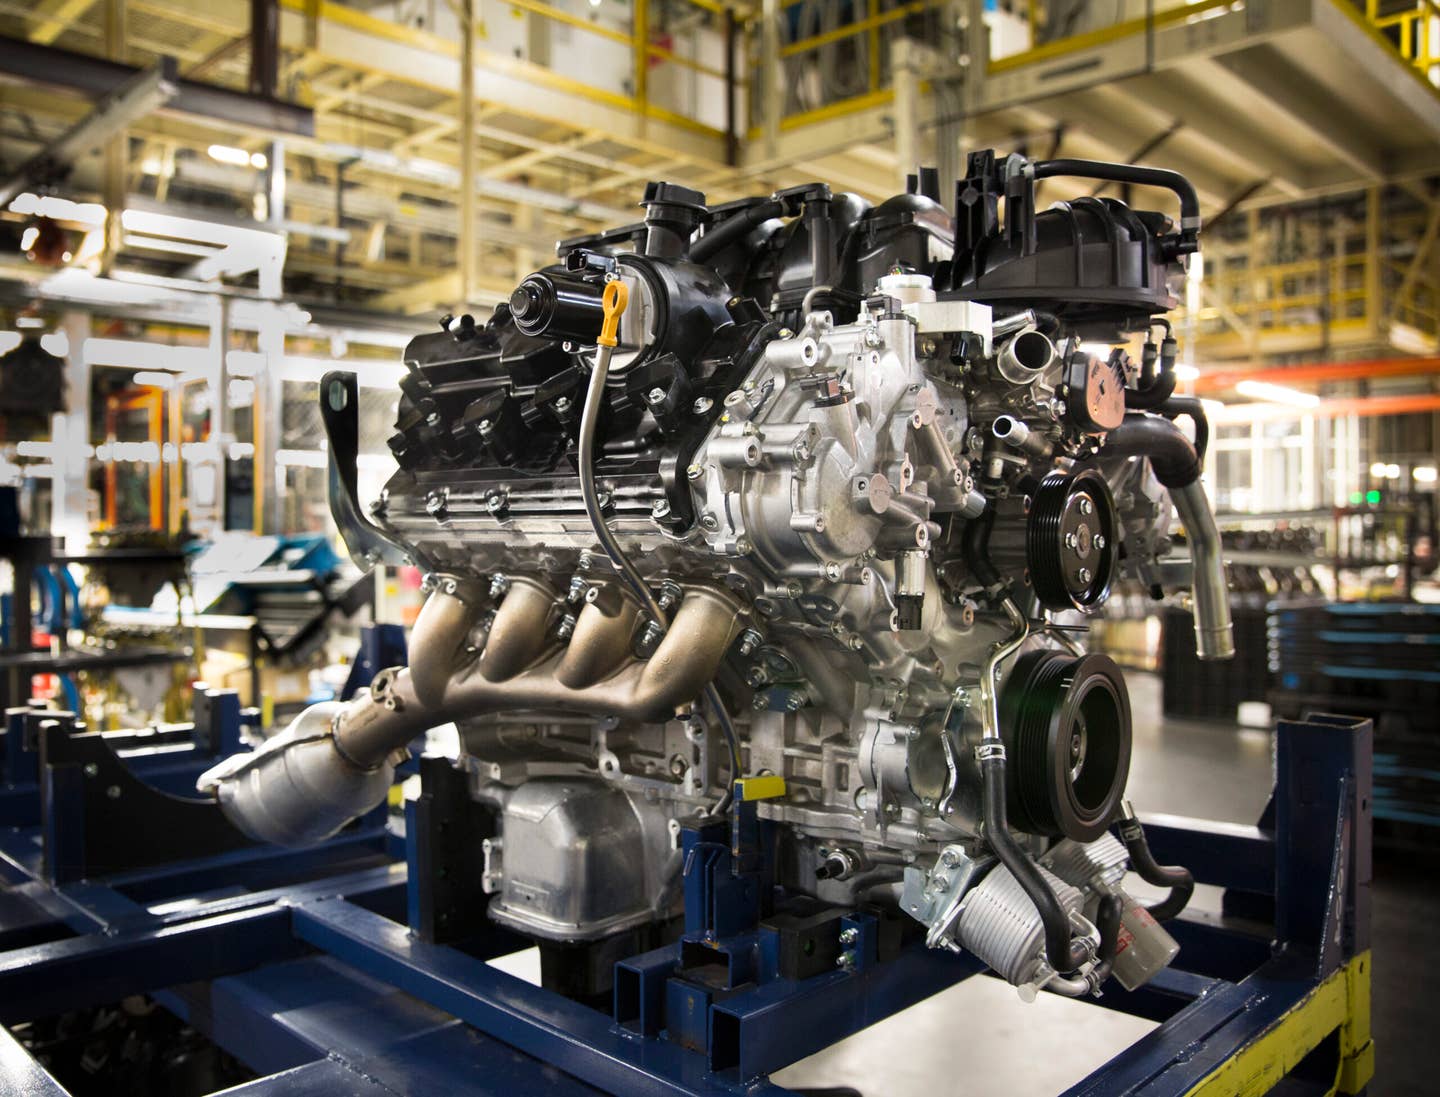 NASHVILLE, Tennessee (15. prosince 2015) – Nissan dnes oznámil, že nový 5,6litrový benzinový motor Endurance® V8, montovaný v Decherdu, Tennessee, bude k dispozici ve zcela nových pickupech TITAN a TITAN XD v plné velikosti. , dokončení první fáze příběhu „Americký TITAN“.  Motor je vybaven čtyřmi ventily na válec, Variable Valve Event &  Lift and Direct Injection a má výkon 390 koní při 5 800 ot./min a točivý moment 401 lb-ft při 4 000 ot./min.